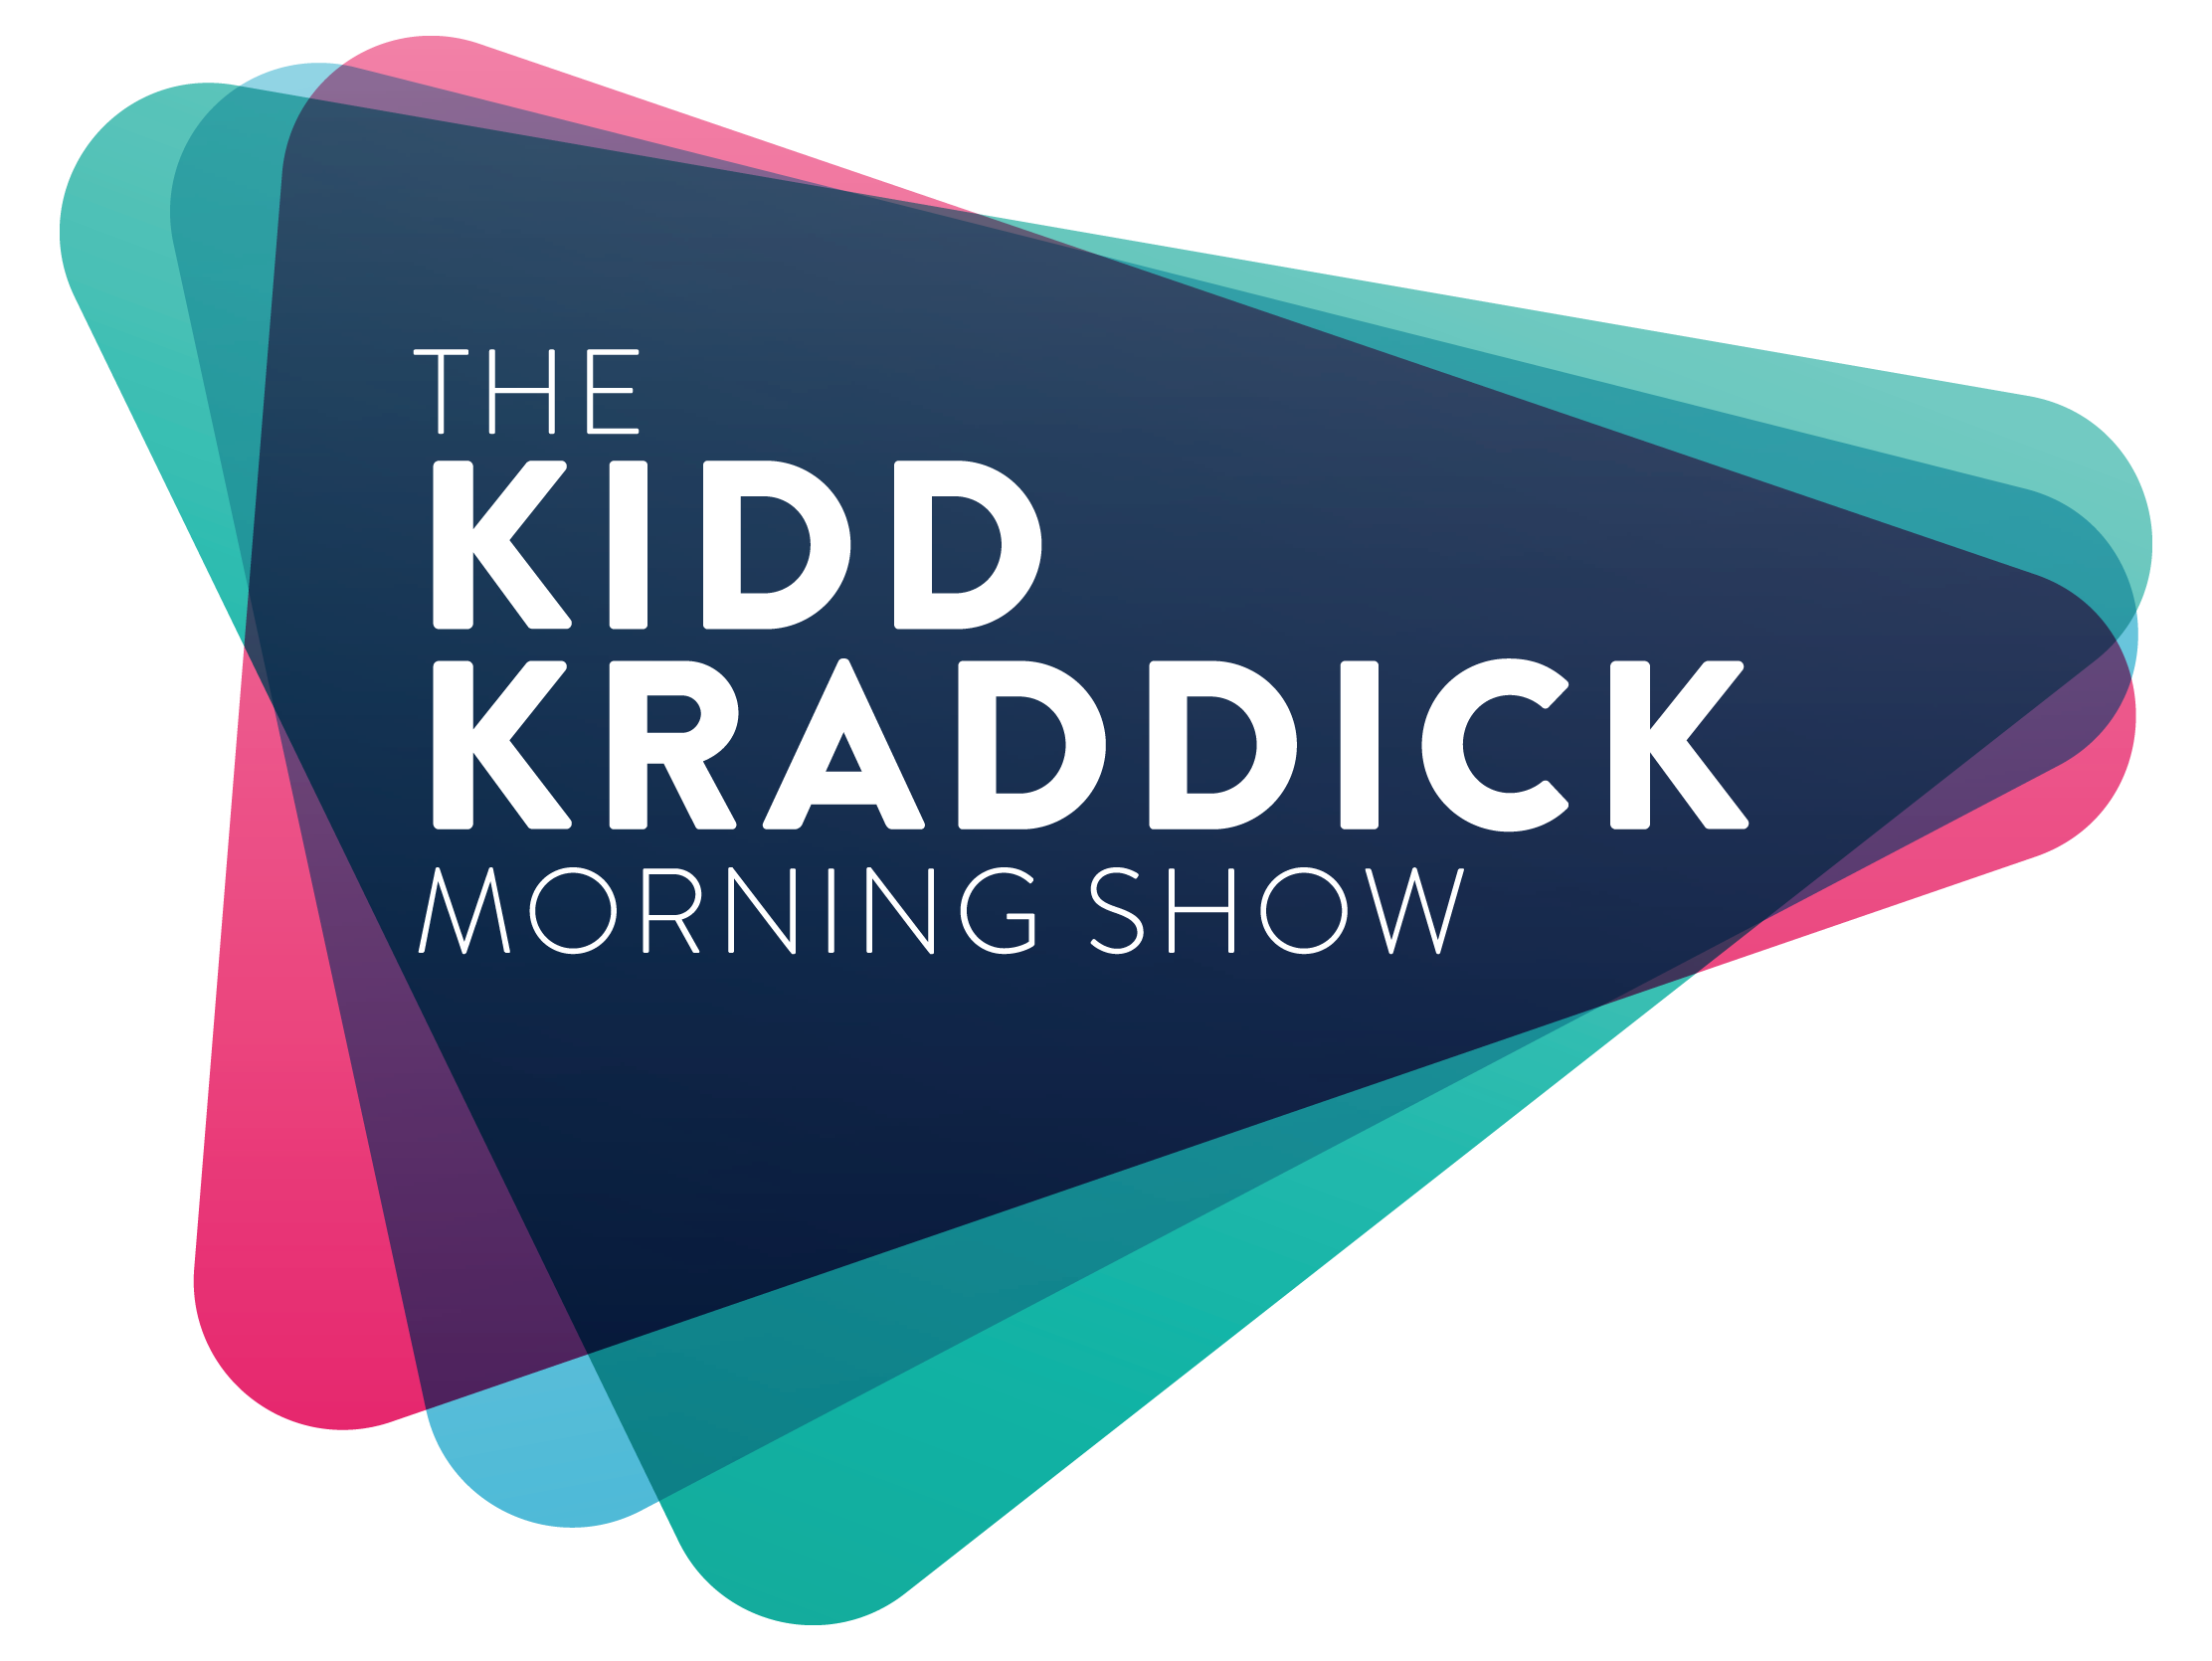 The Kidd Kraddick Morning Show